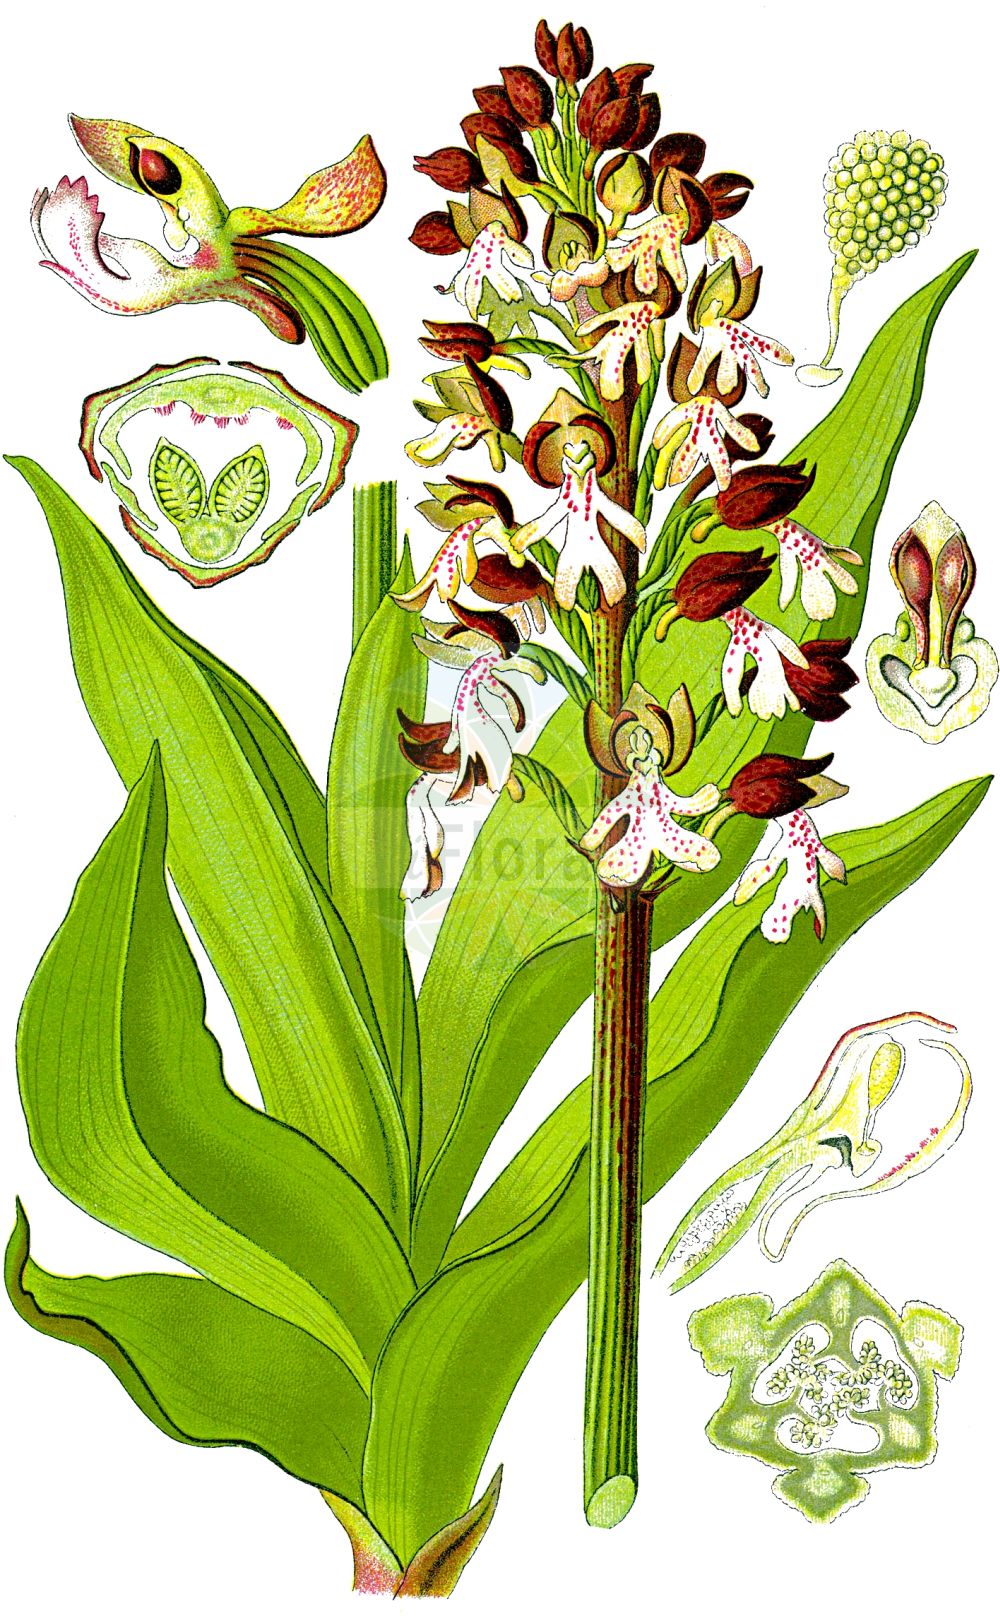 Historische Abbildung von Orchis purpurea (Purpur-Knabenkraut - Lady Orchid). Das Bild zeigt Blatt, Bluete, Frucht und Same. ---- Historical Drawing of Orchis purpurea (Purpur-Knabenkraut - Lady Orchid). The image is showing leaf, flower, fruit and seed.(Orchis purpurea,Purpur-Knabenkraut,Lady Orchid,Orchis purpurea,Purpur-Knabenkraut,Braunrotes Knabenkraut,Lady Orchid,Orchis,Knabenkraut,Orchidaceae,Knabenkrautgewächse,Orchid family,Blatt,Bluete,Frucht,Same,leaf,flower,fruit,seed,Thomé (1885))